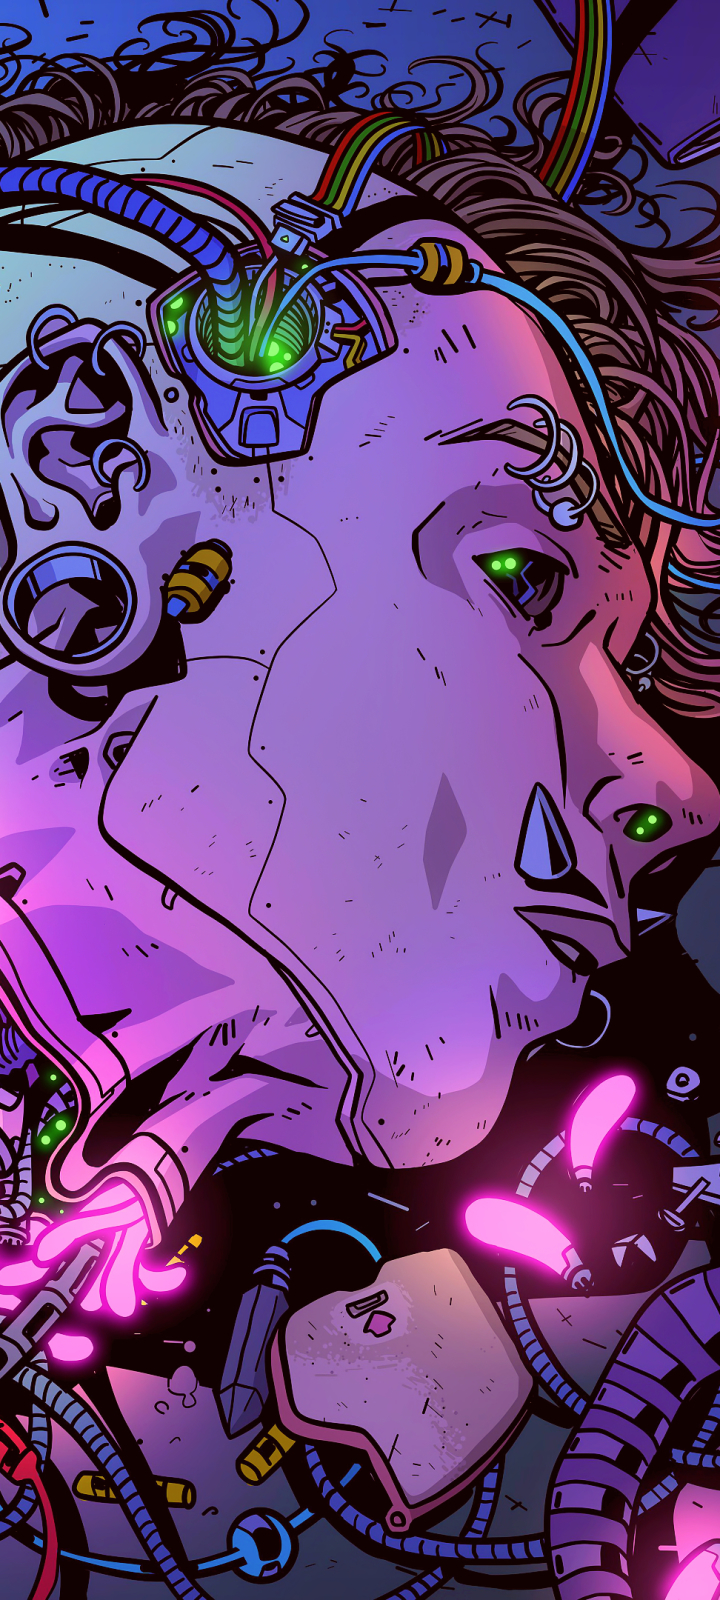 Sci Fi Cyberpunk Phone Wallpaper by Alex Steven Martin